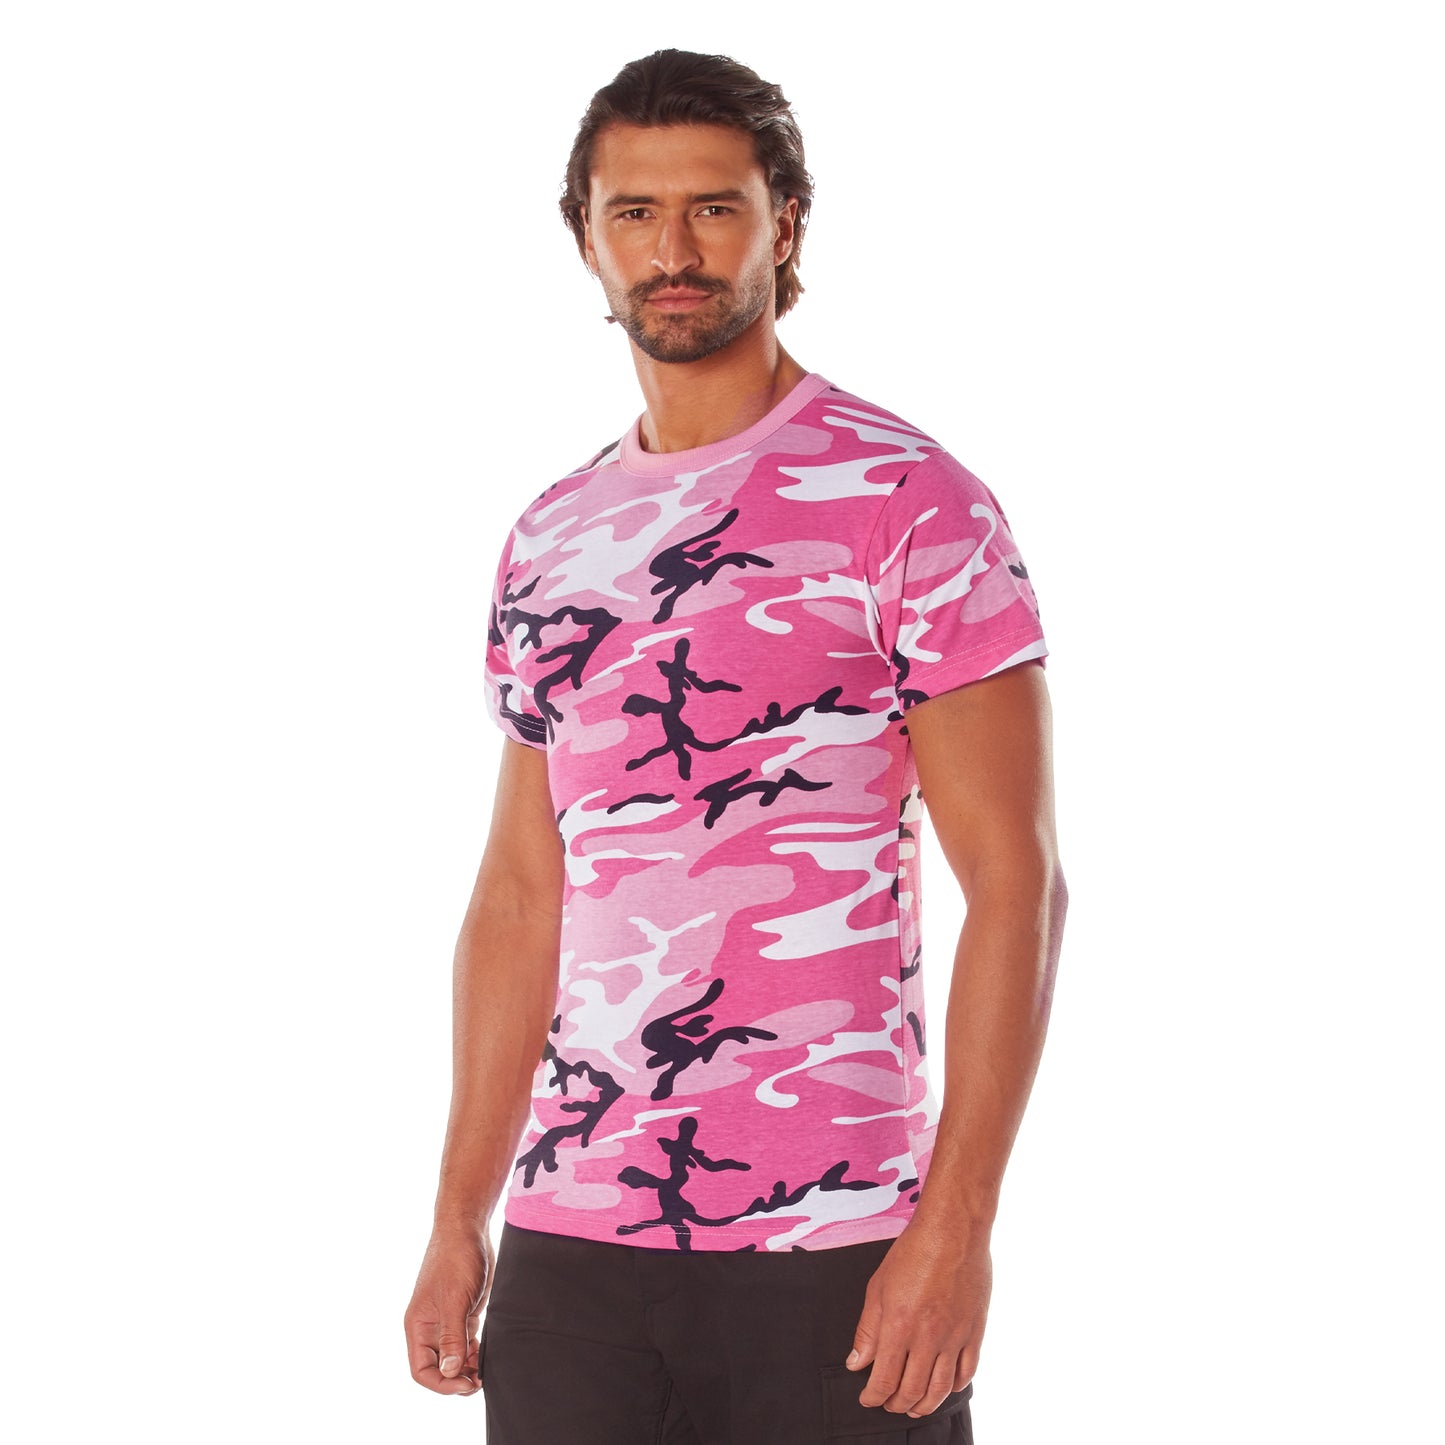 Rothco Color Camo T-Shirts - Pink Camo